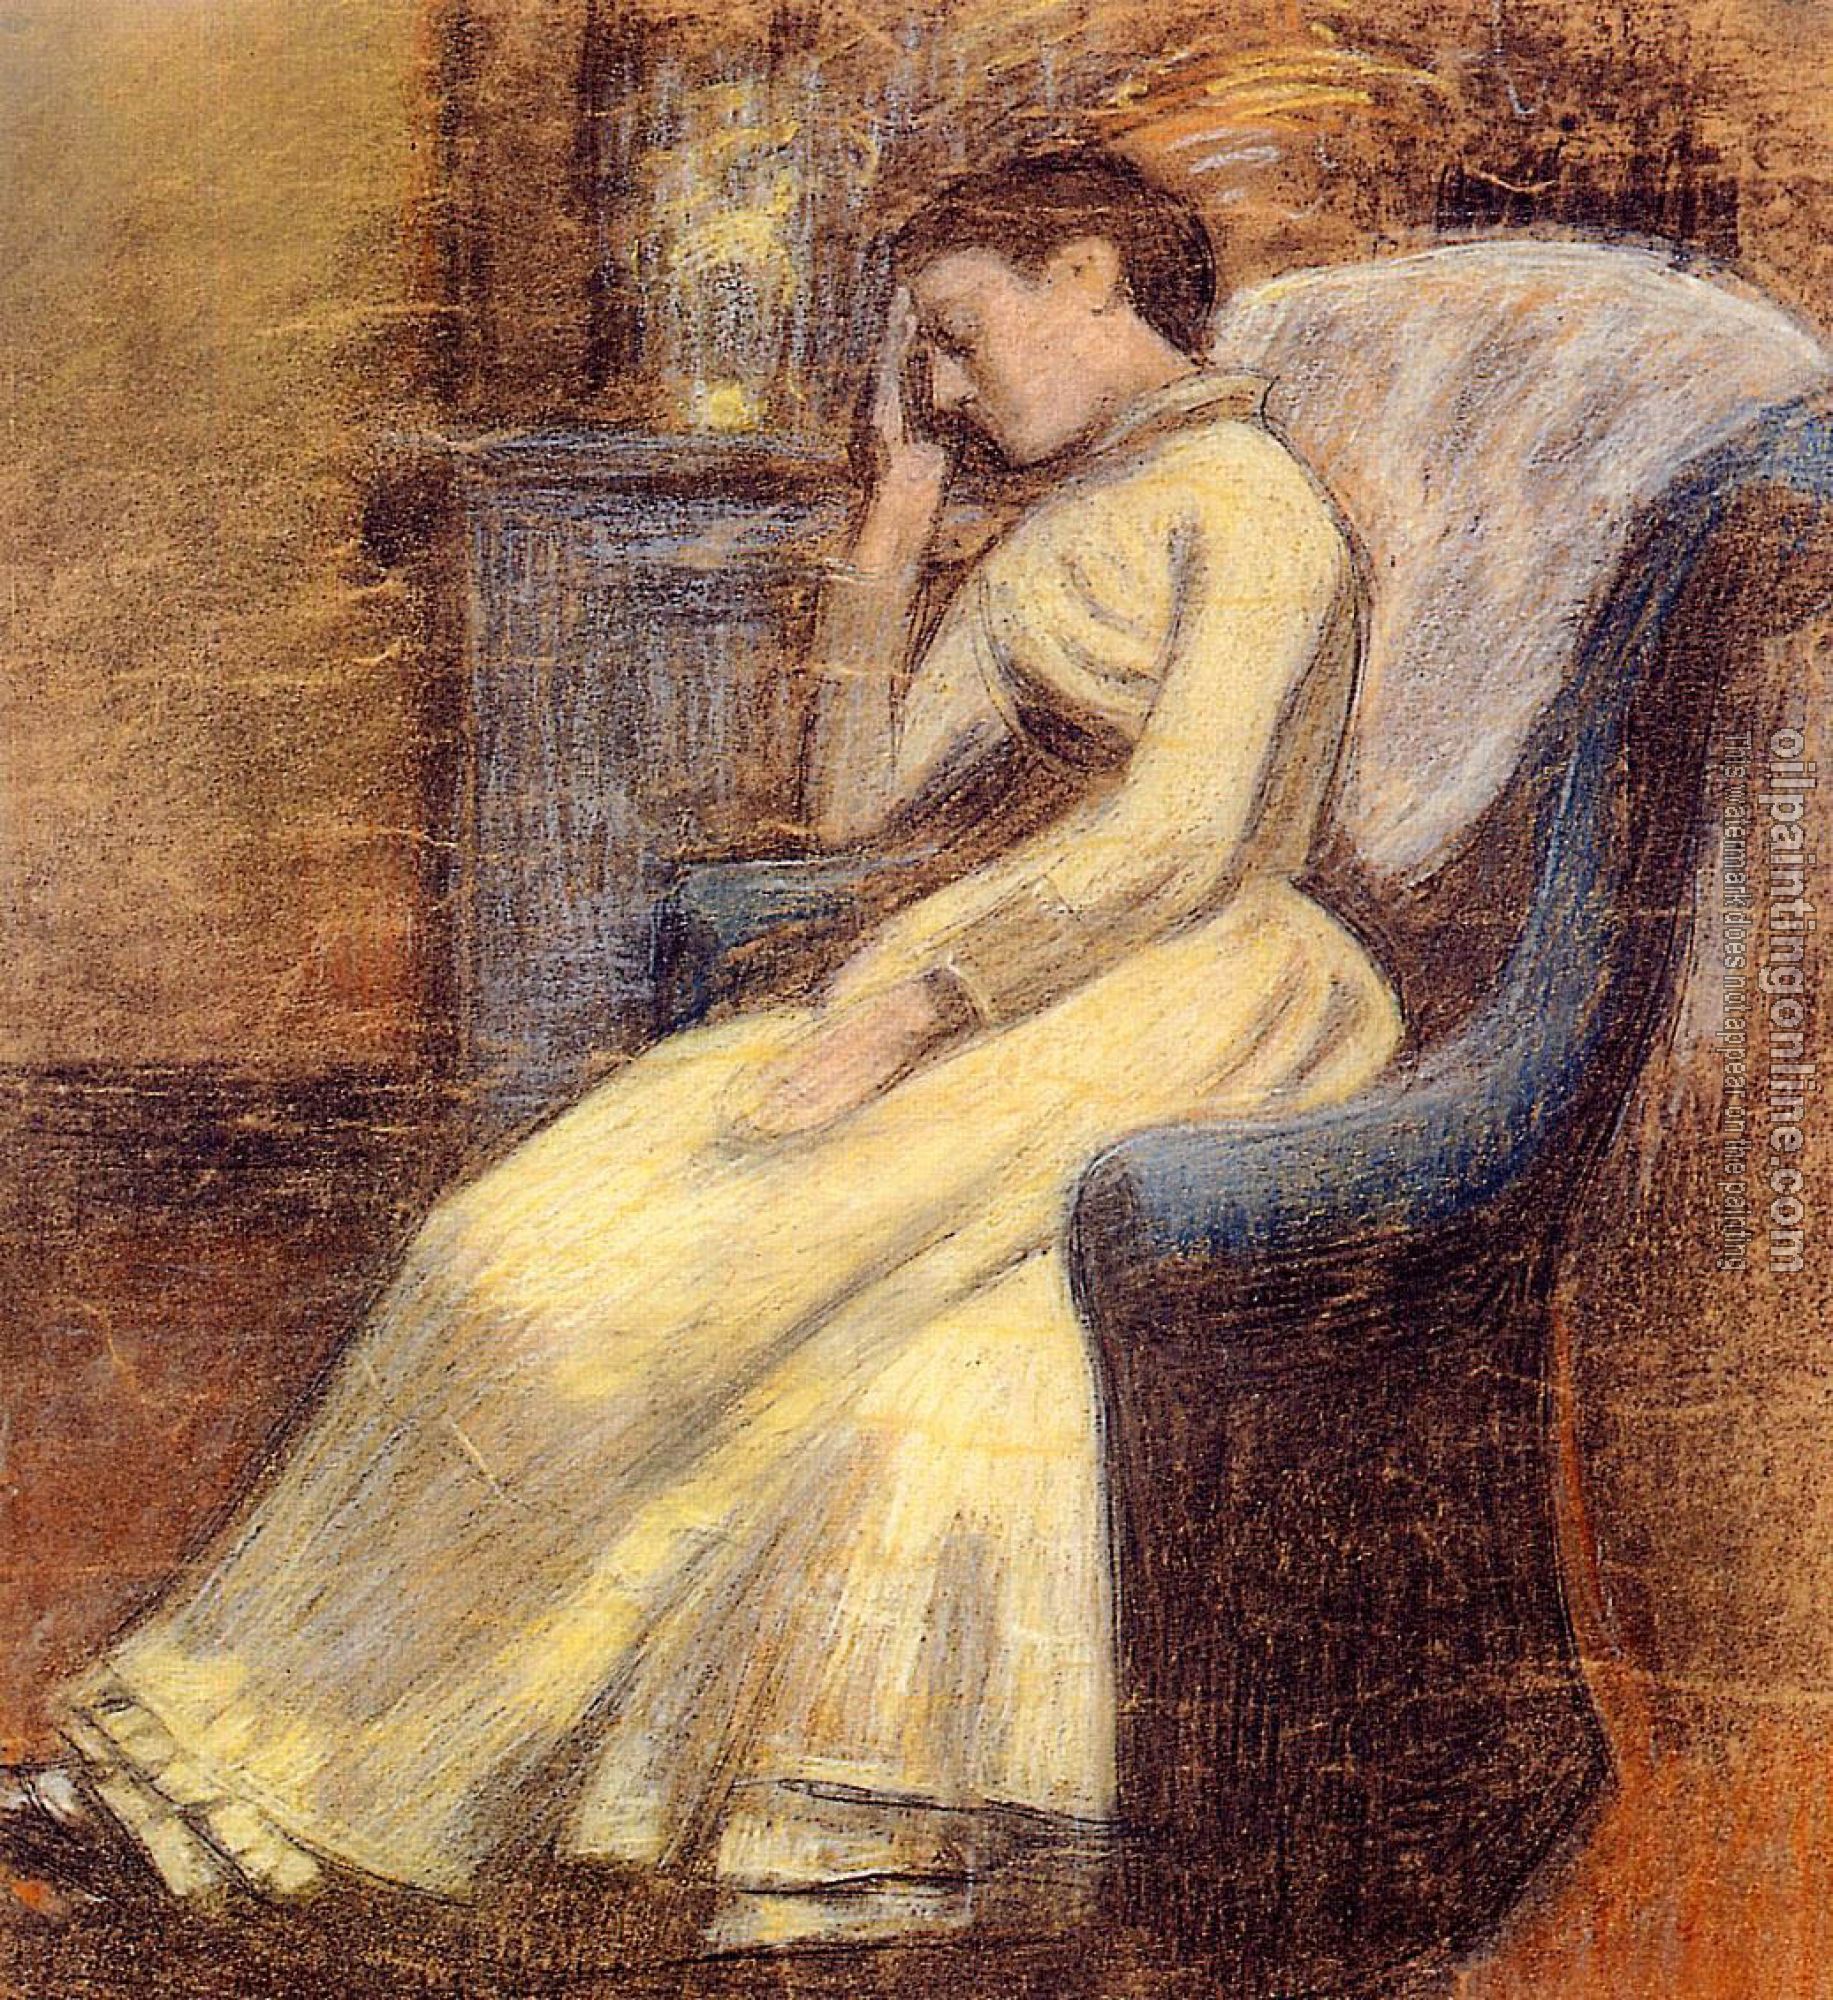 Lemmen, Georges - Julie Lemmen Sleeping in an Armchair